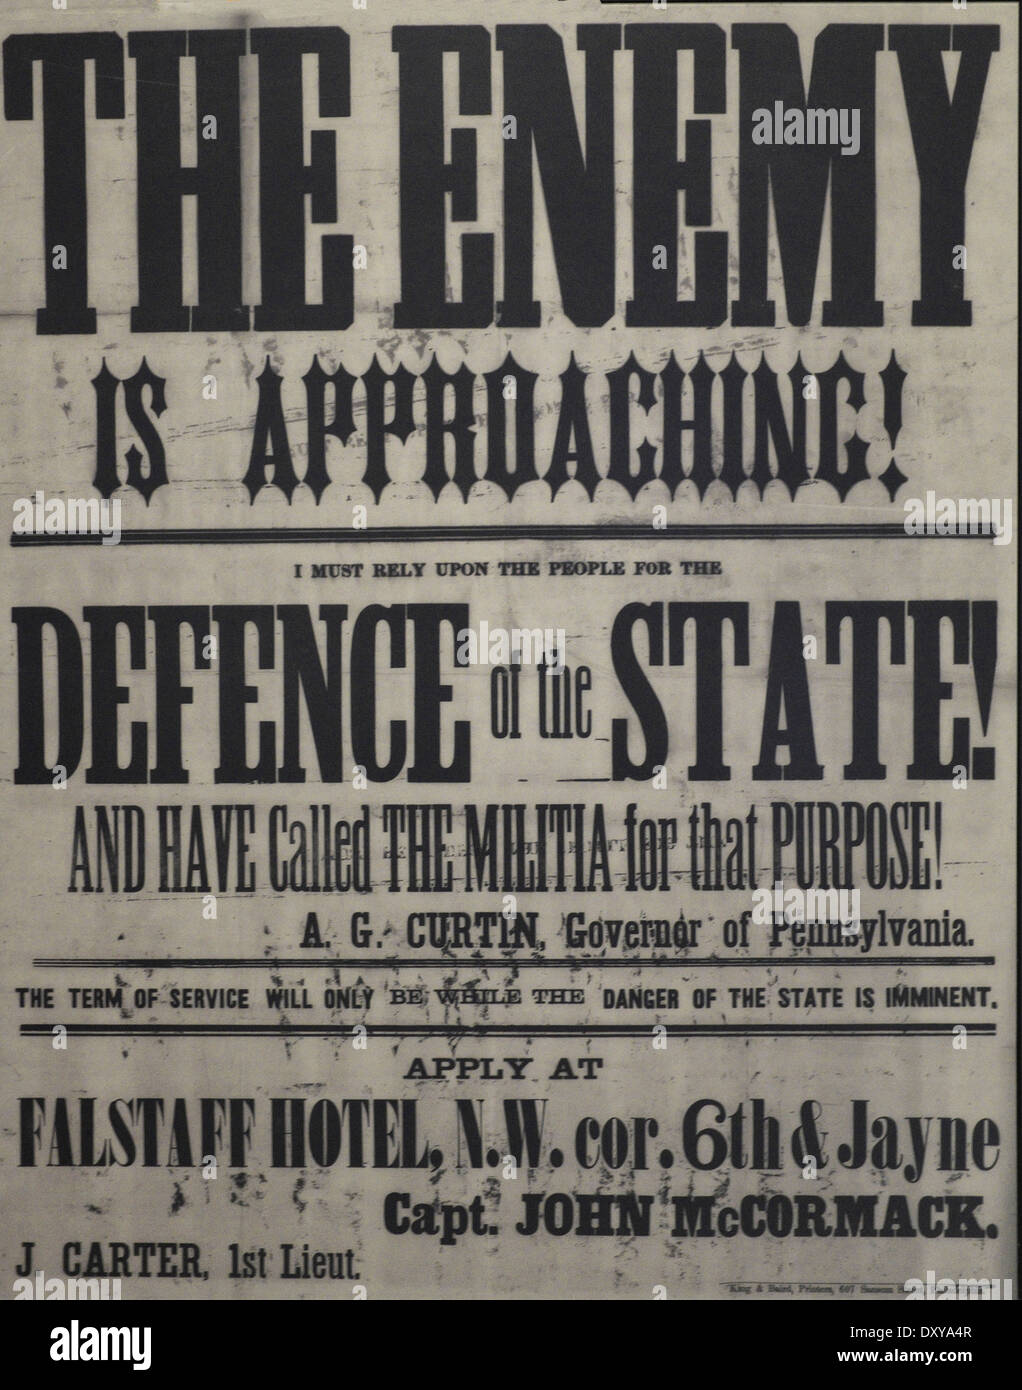 Der Feind ist Approaching - ich muss auf die Menschen für die Verteidigung des Staates angewiesen und haben gefordert, dass Zweck - A G Curtin, Gouverneur von Pennsylvania - Poster von der Gettysburg Kampagne während des Bürgerkriegs der USA, Juli 1863 die Miliz Stockfoto